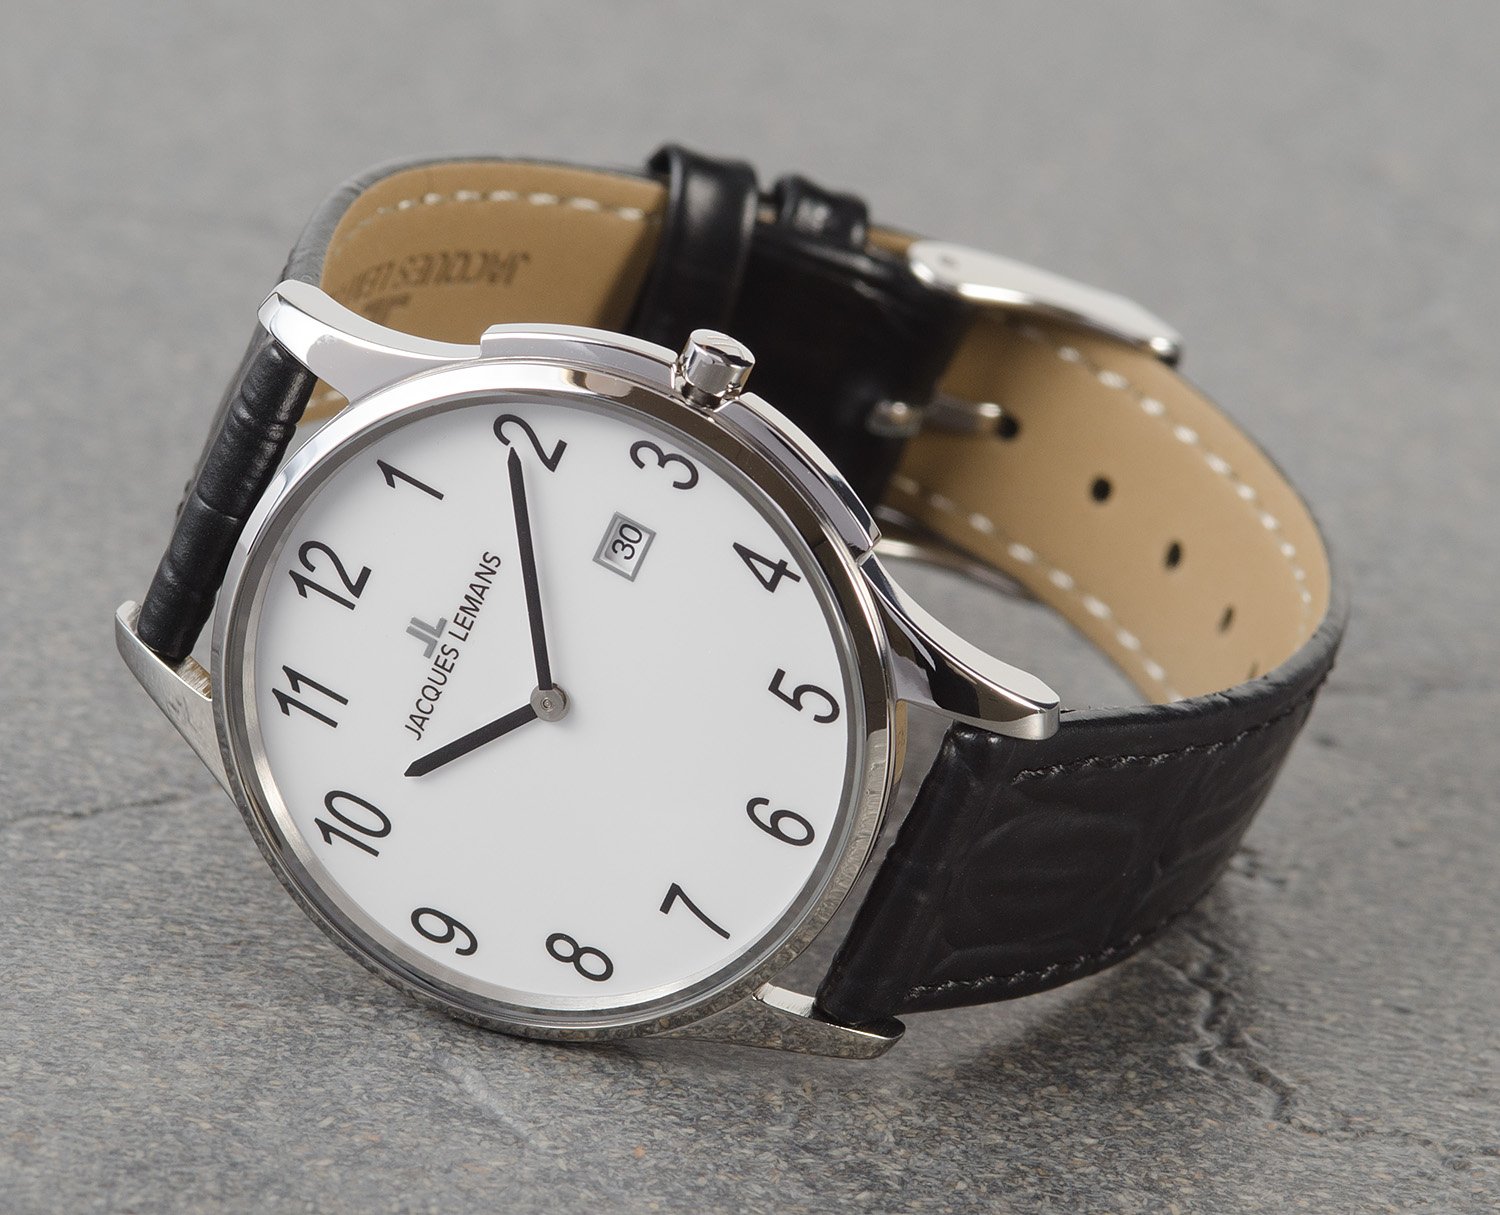 1-1937D, наручные часы Jacques Lemans